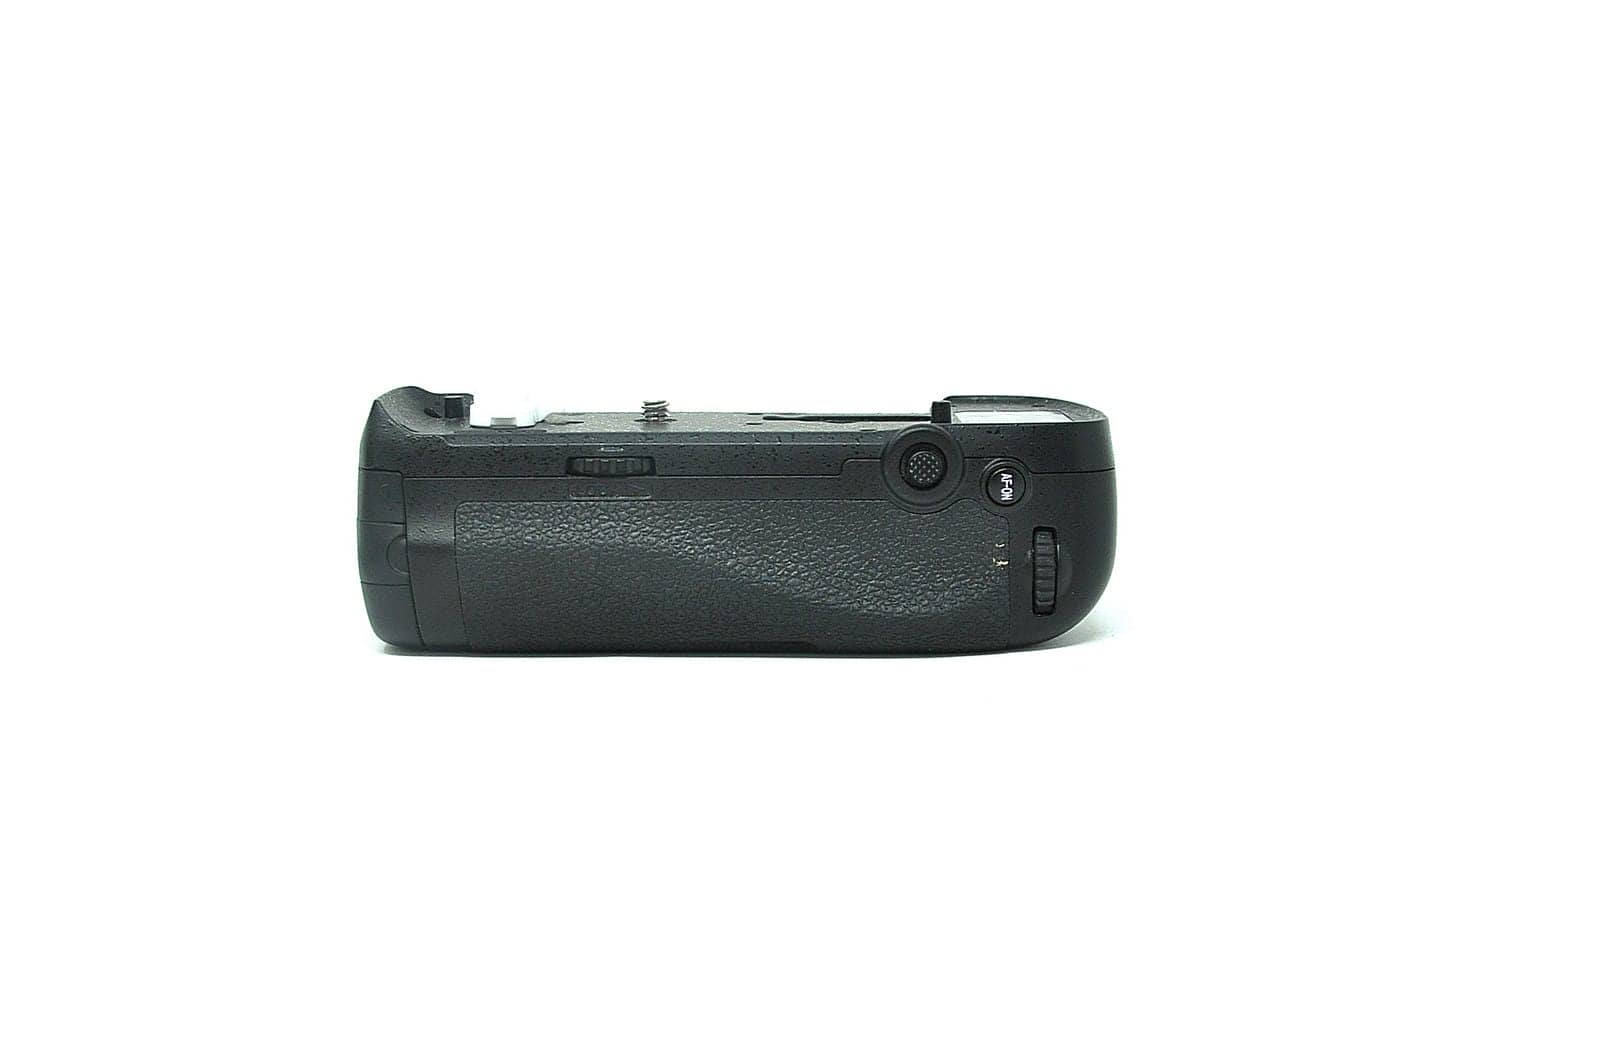 Used Nikon MB-D18 battery grip for Nikon D850(boxed SH39383)